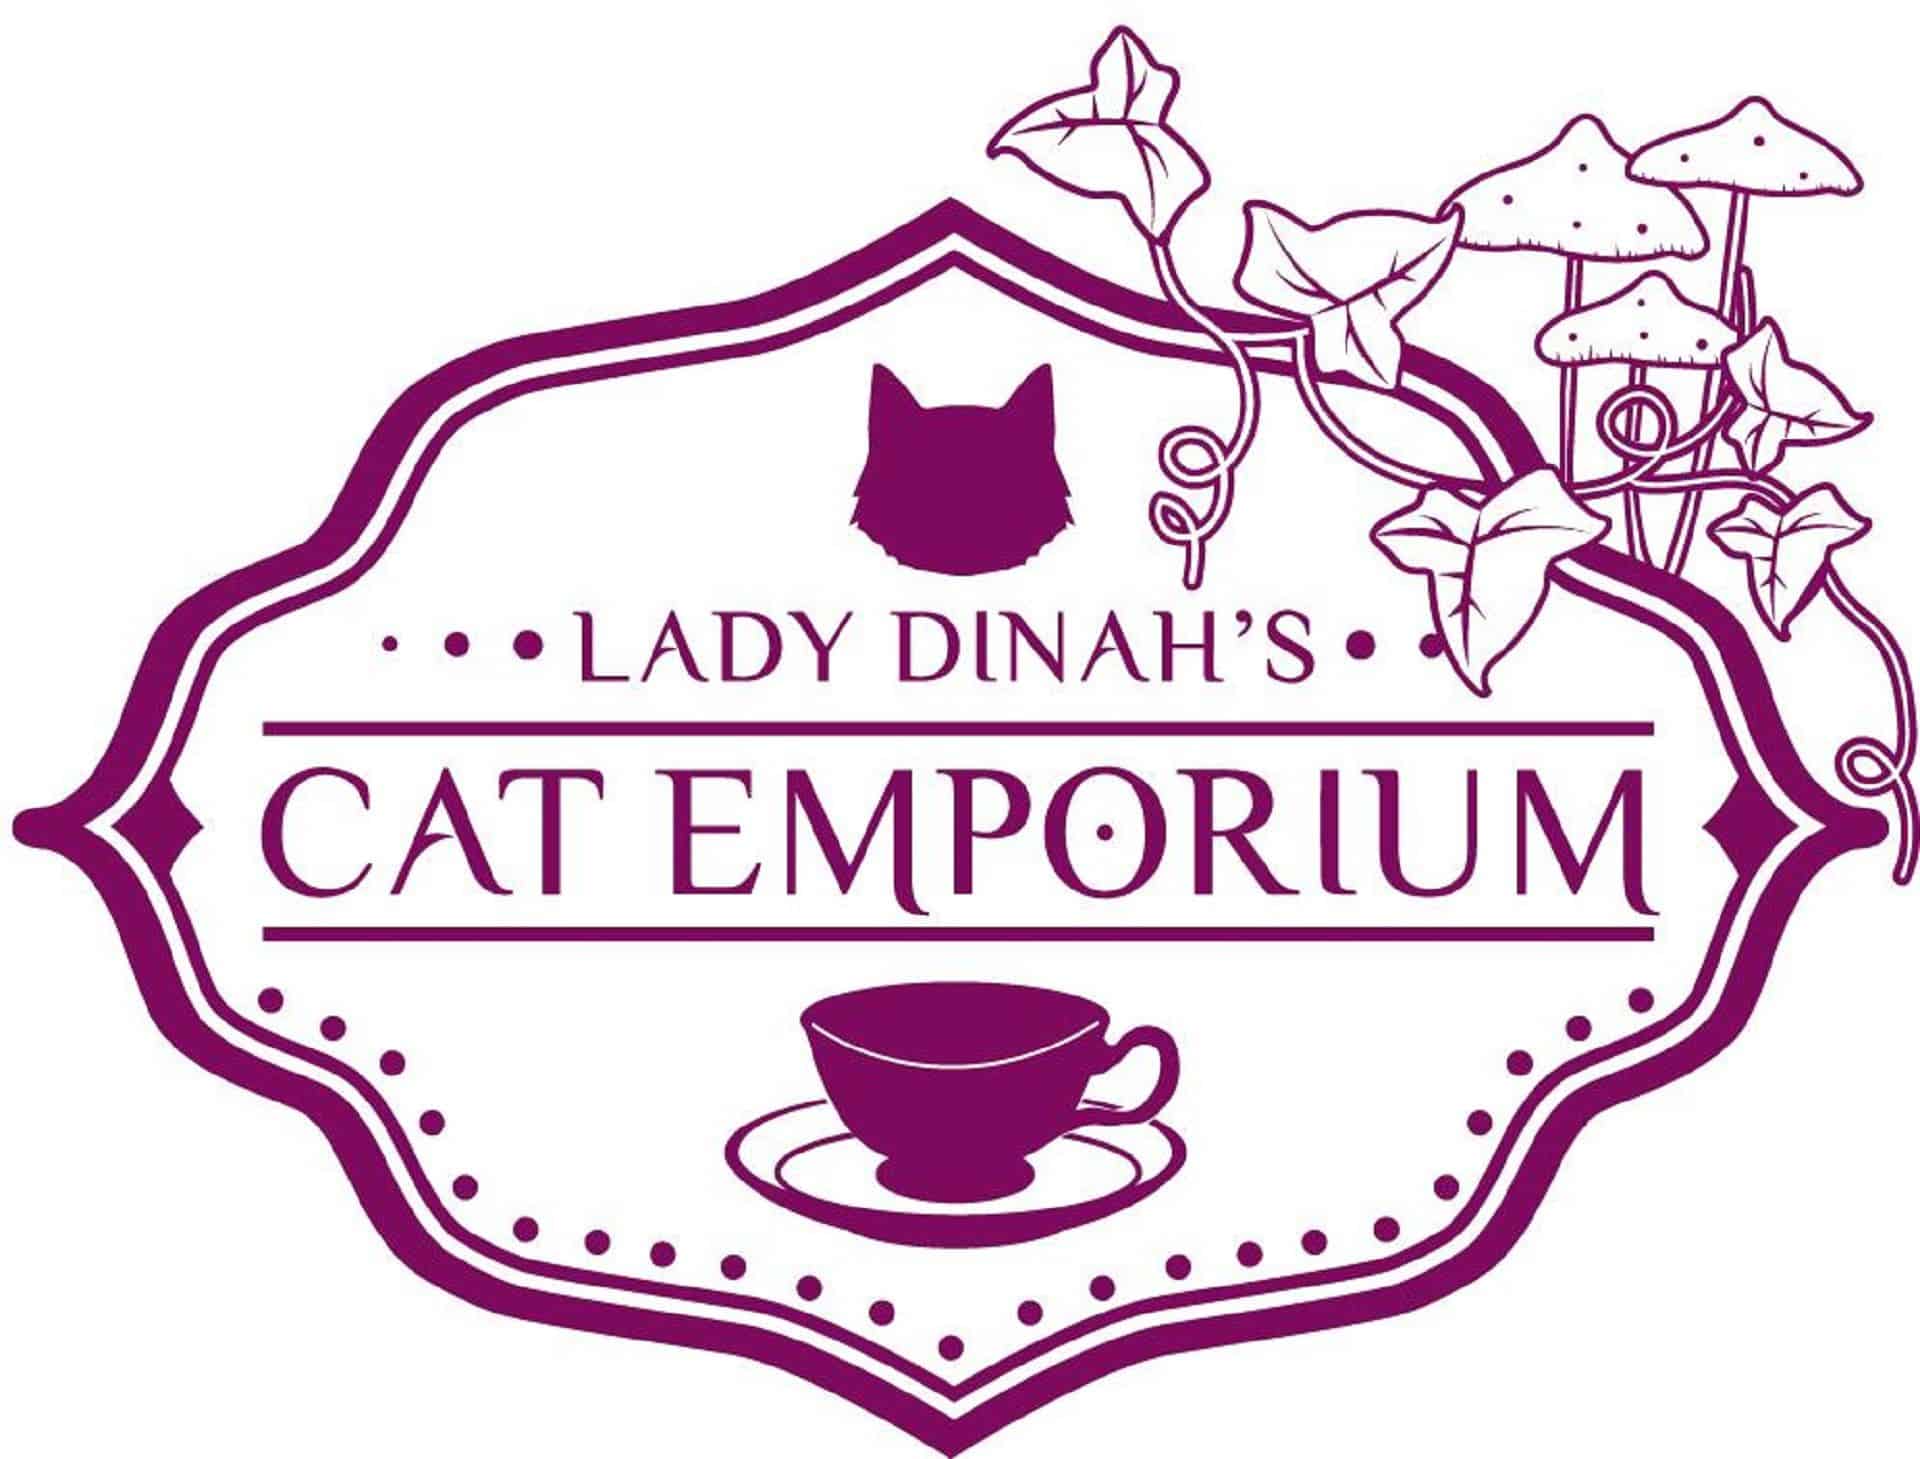 Lady Dinah's Cat Emporium in UK